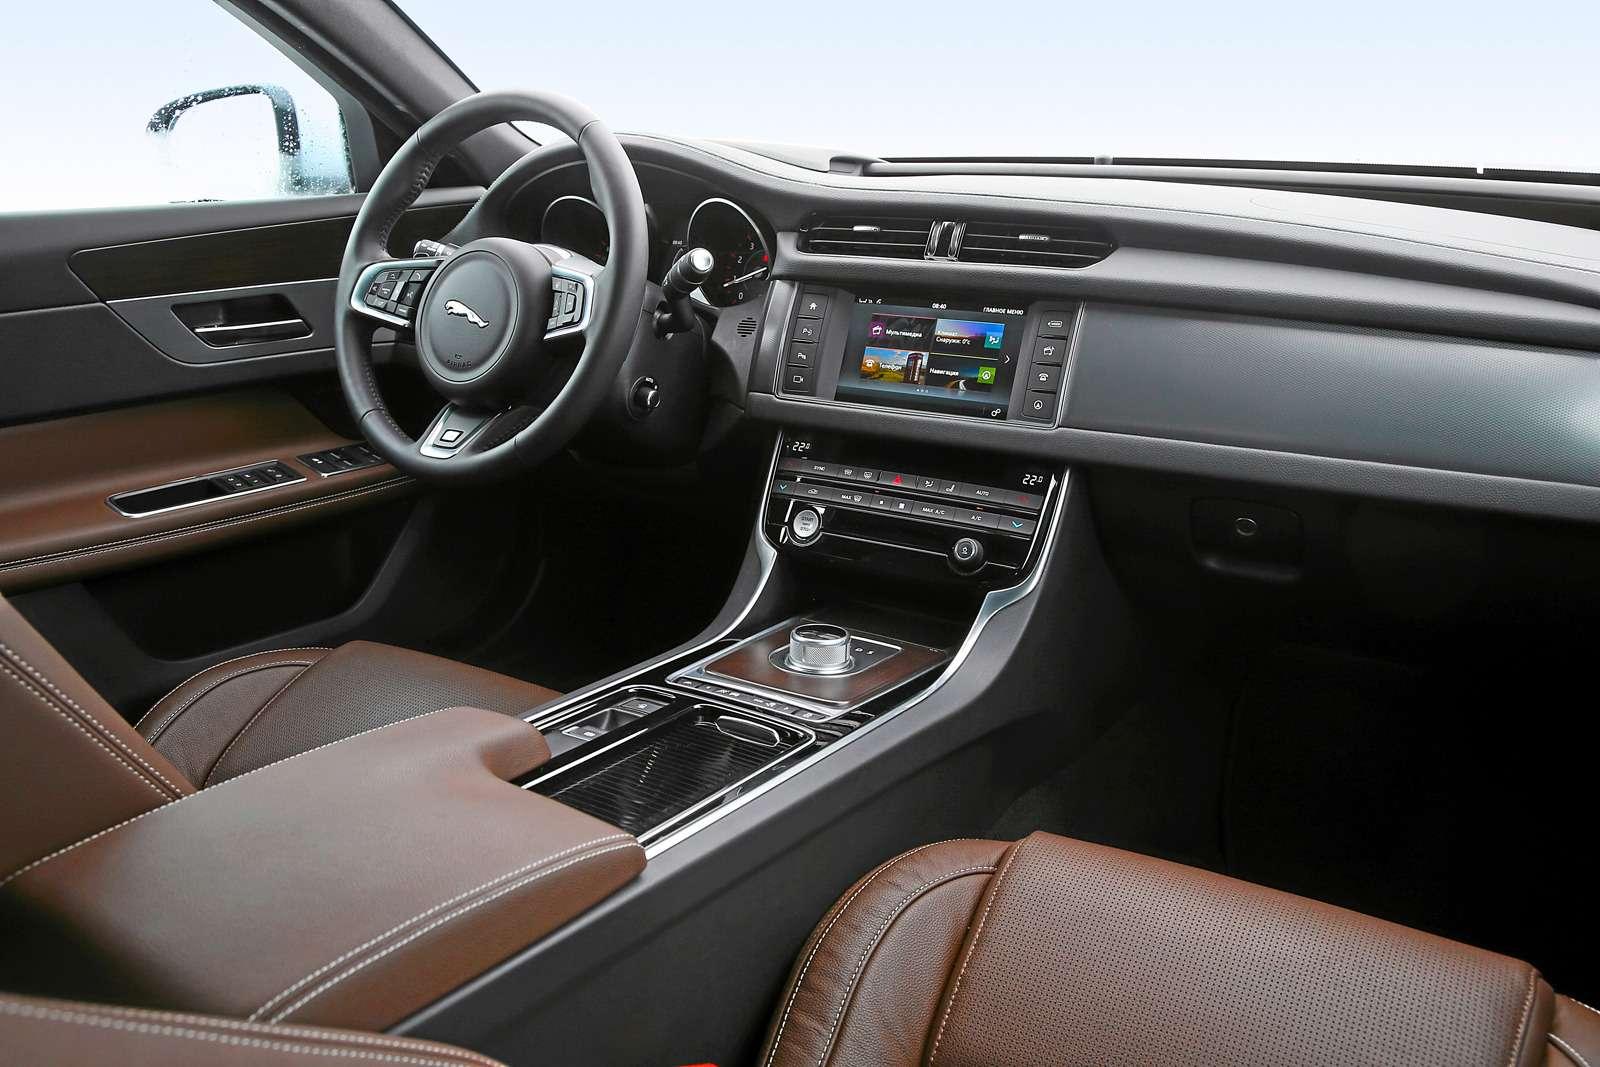 Jaguar XF. Дизайн – в стиле компактного седана Jaguar XE. Но XF просторнее. Интерфейс информационно- развлекательной системы логичнее, чем был у прежнего XF.